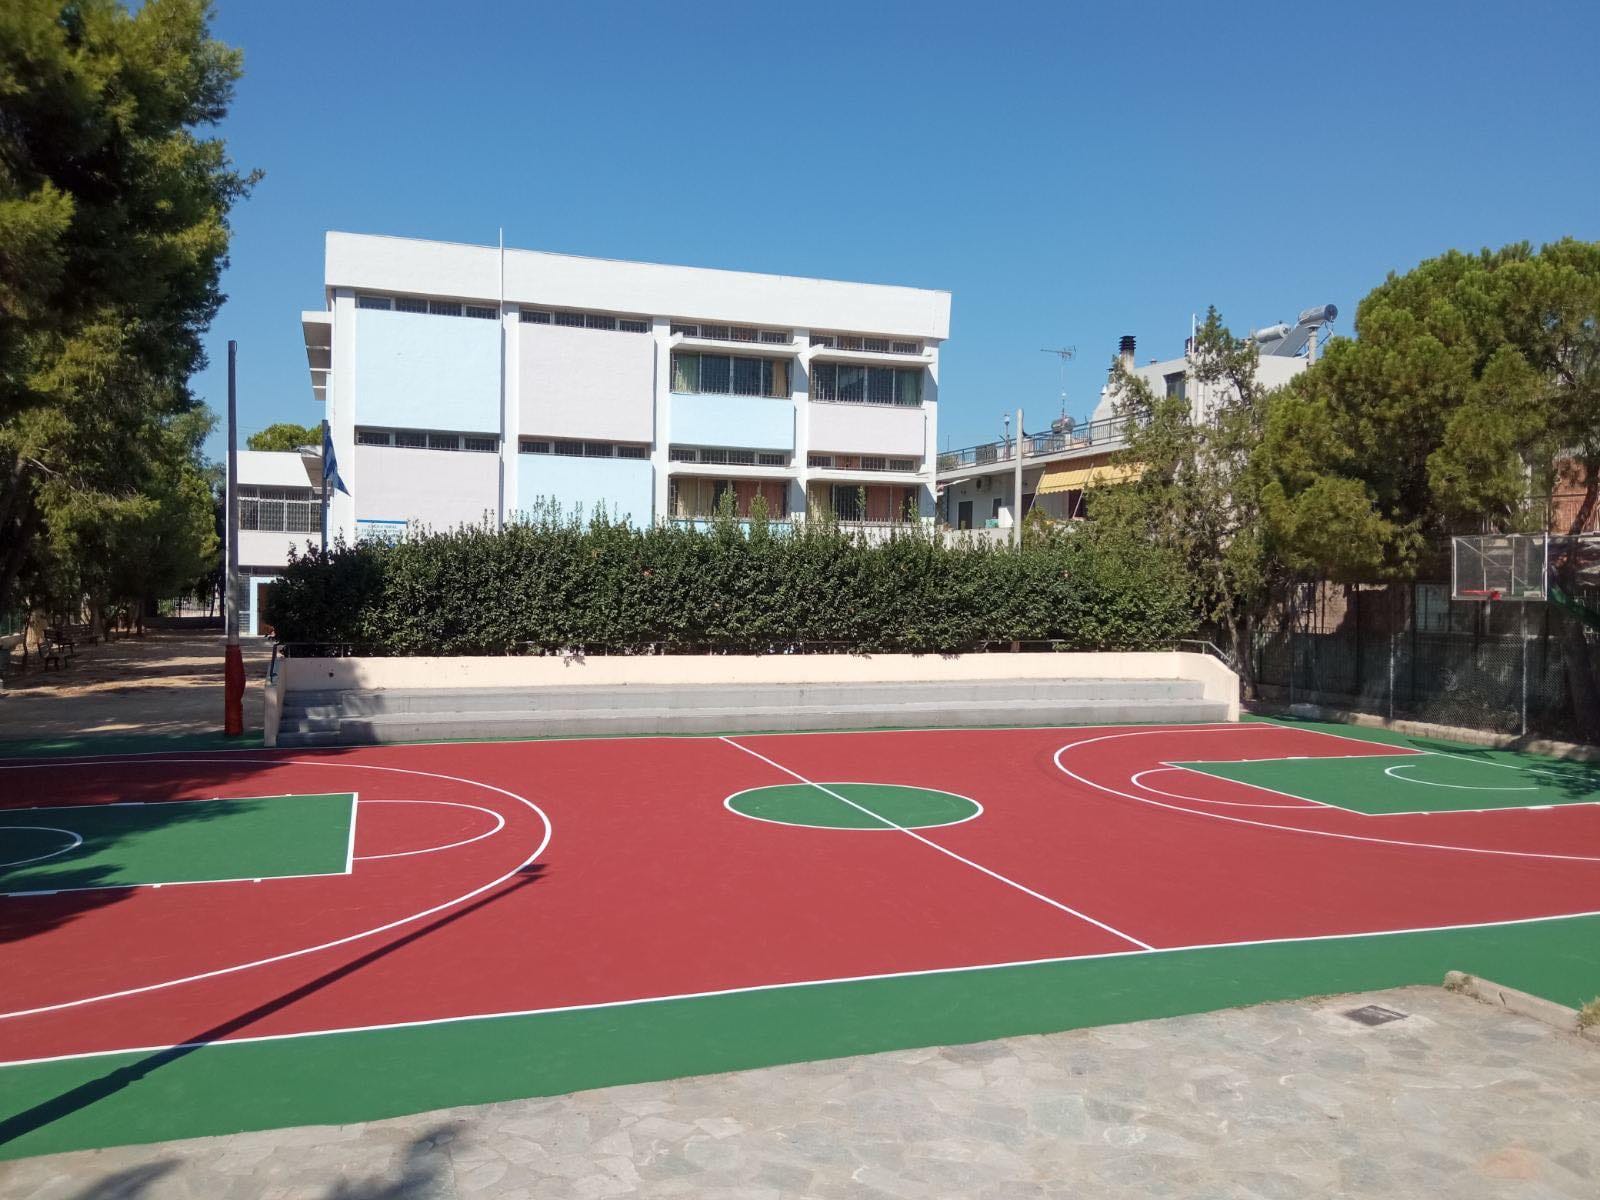 Σε νέο, ανανεωμένο σχολικό περιβάλλον επιστρέφουν οι μαθητές του Δήμου Ελευσίνας